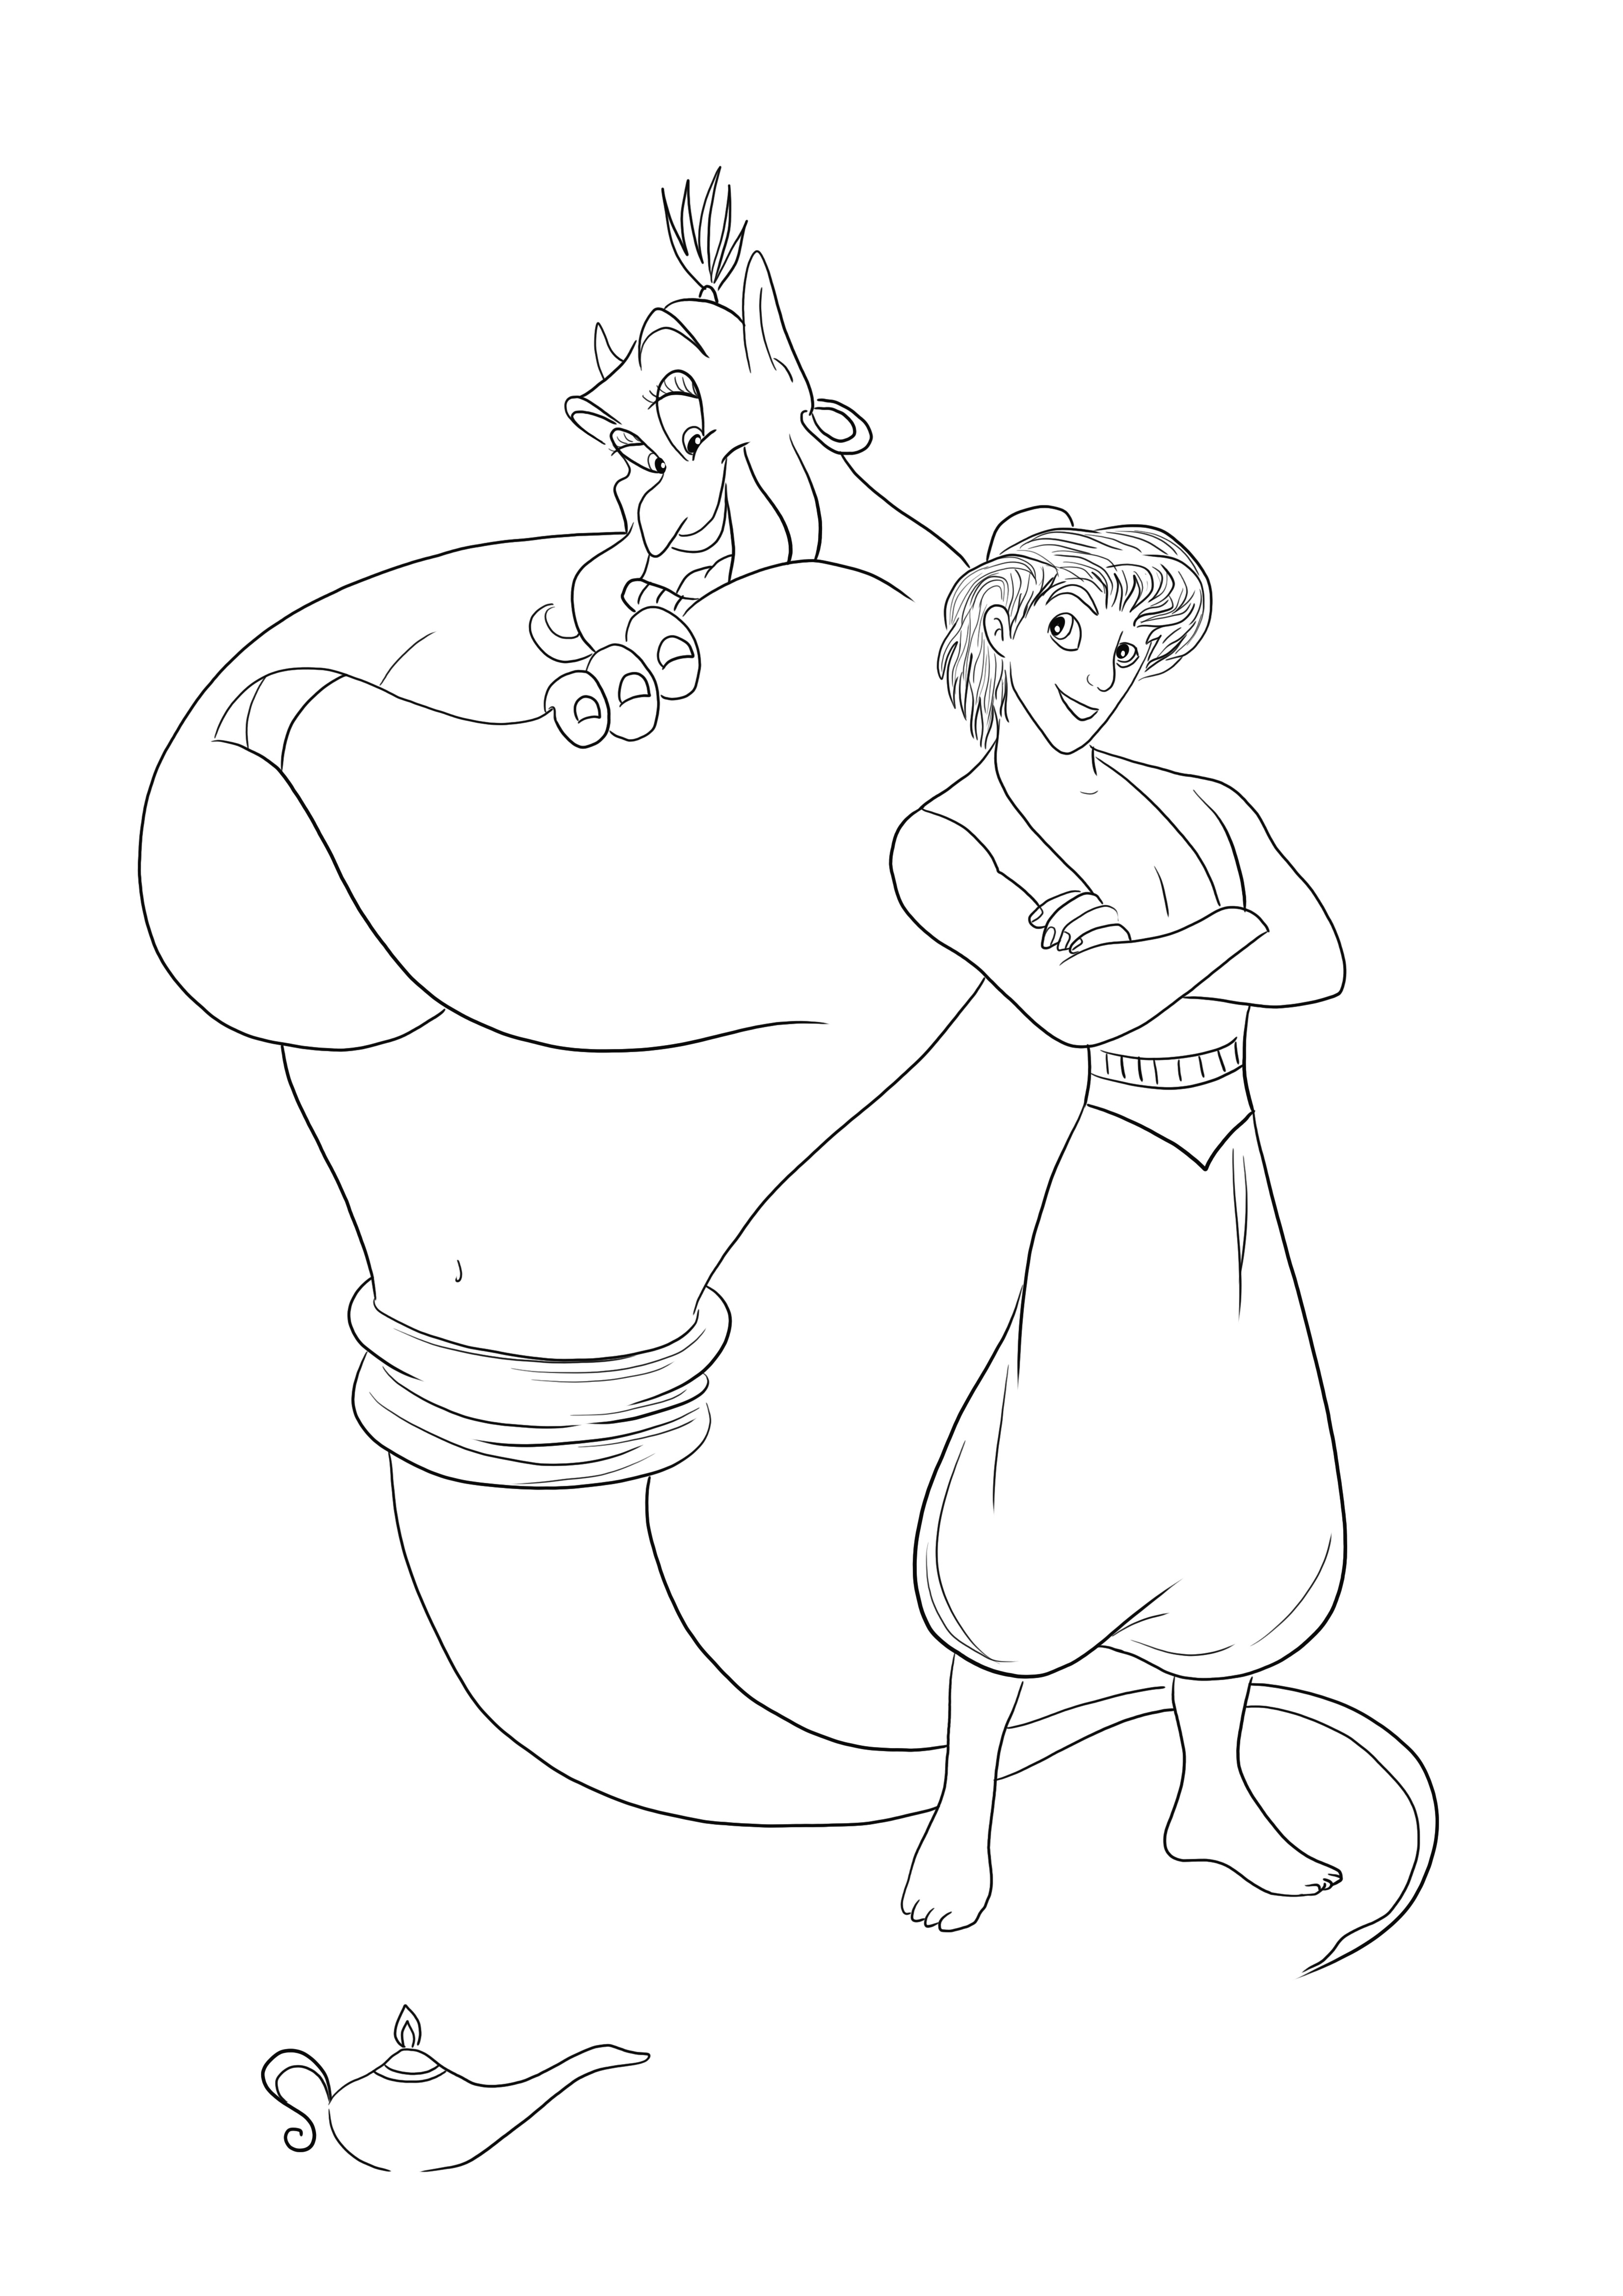 A Genie és az Aladdin ingyenesen nyomtatható színezéshez és szórakozáshoz